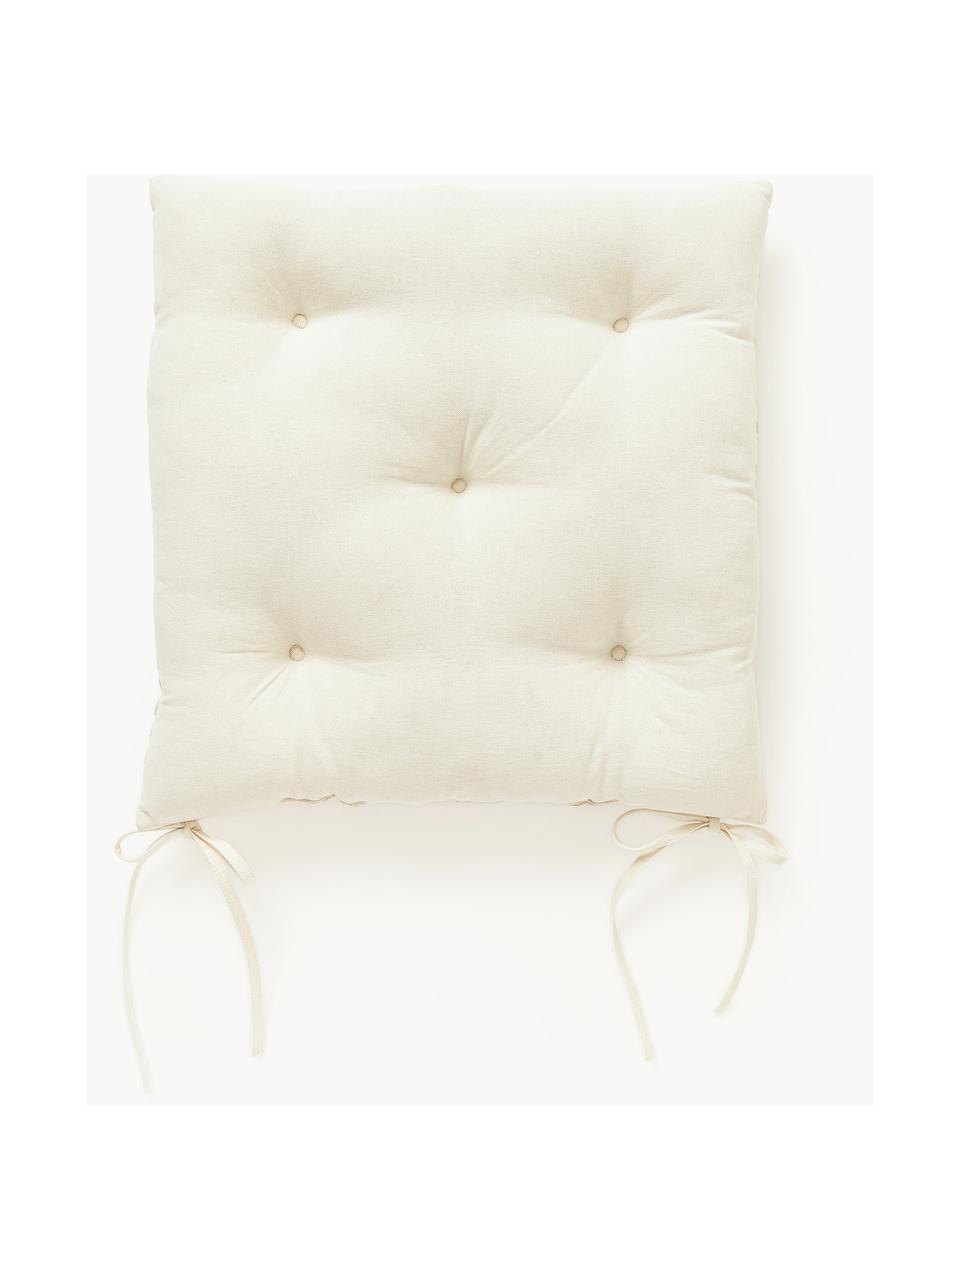 Coussins d'assise graphique en coton Sevil, 2 pièces, Blanc cassé, blanc crème, larg. 40 x long. 40 cm